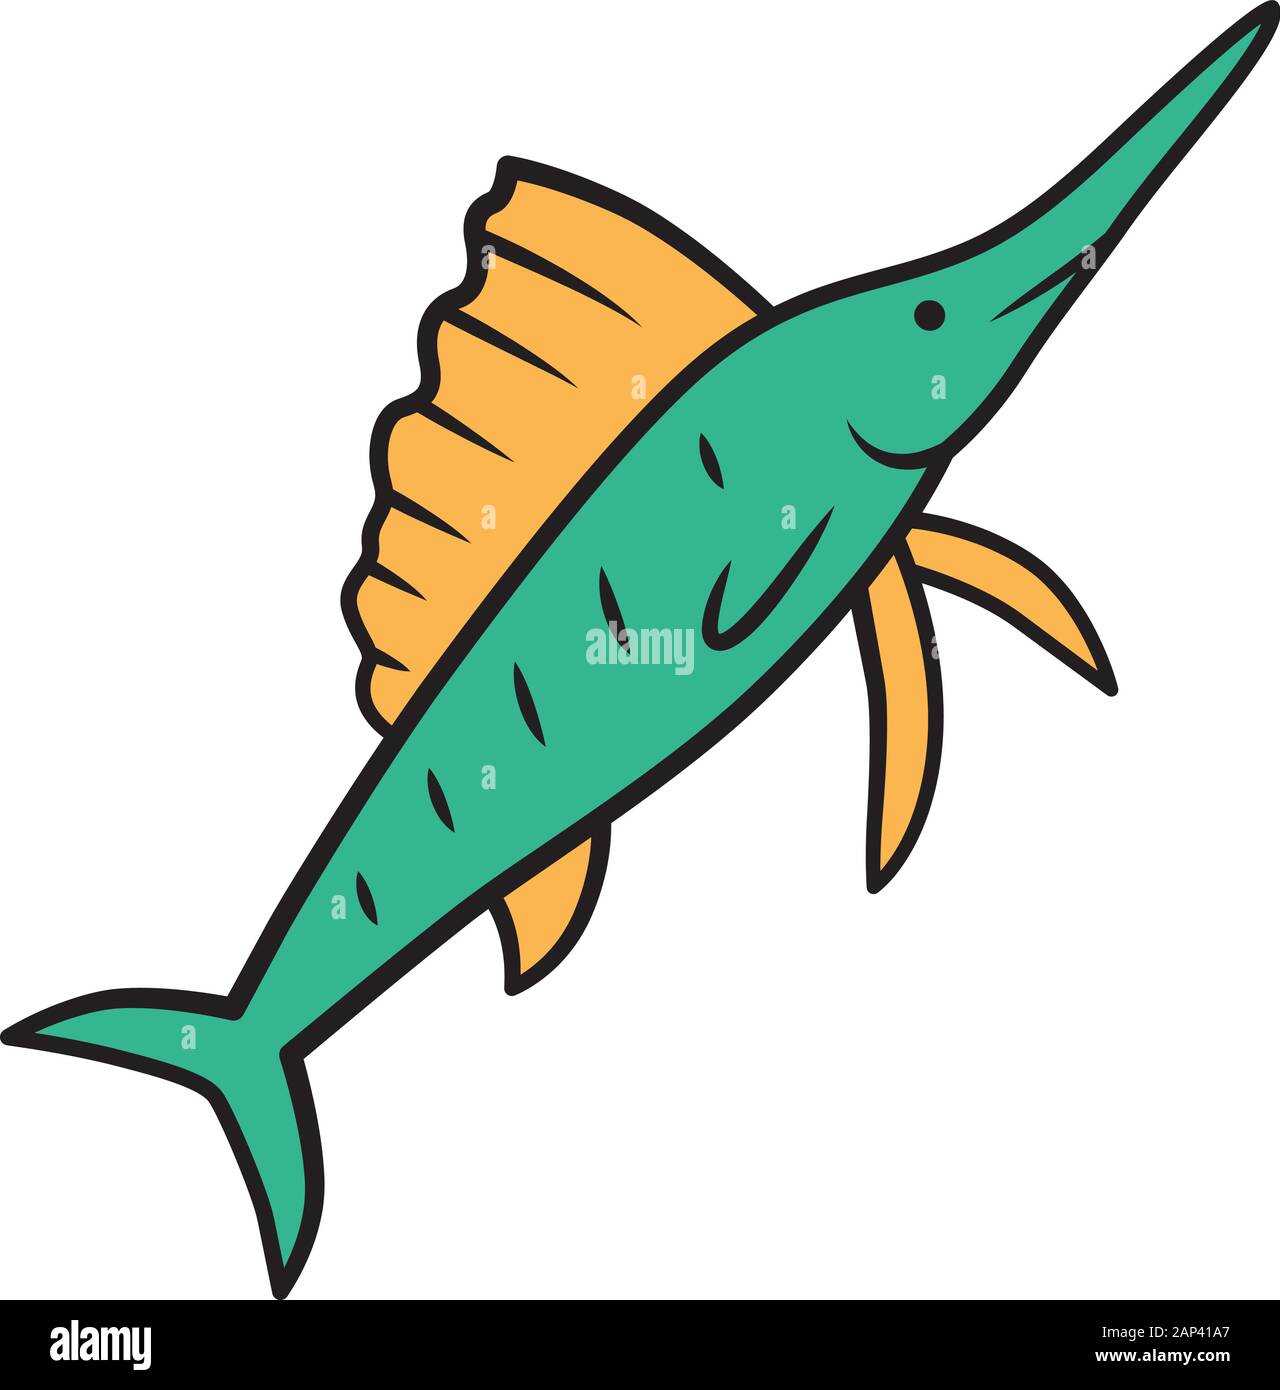 Icono de pez vela de color verde. Pez nadando con fuerte nariz larga.  Submarino animal pez espada. La pesca. Criatura acuática. Naturaleza  marina. La fauna del océano, Mar i Imagen Vector de